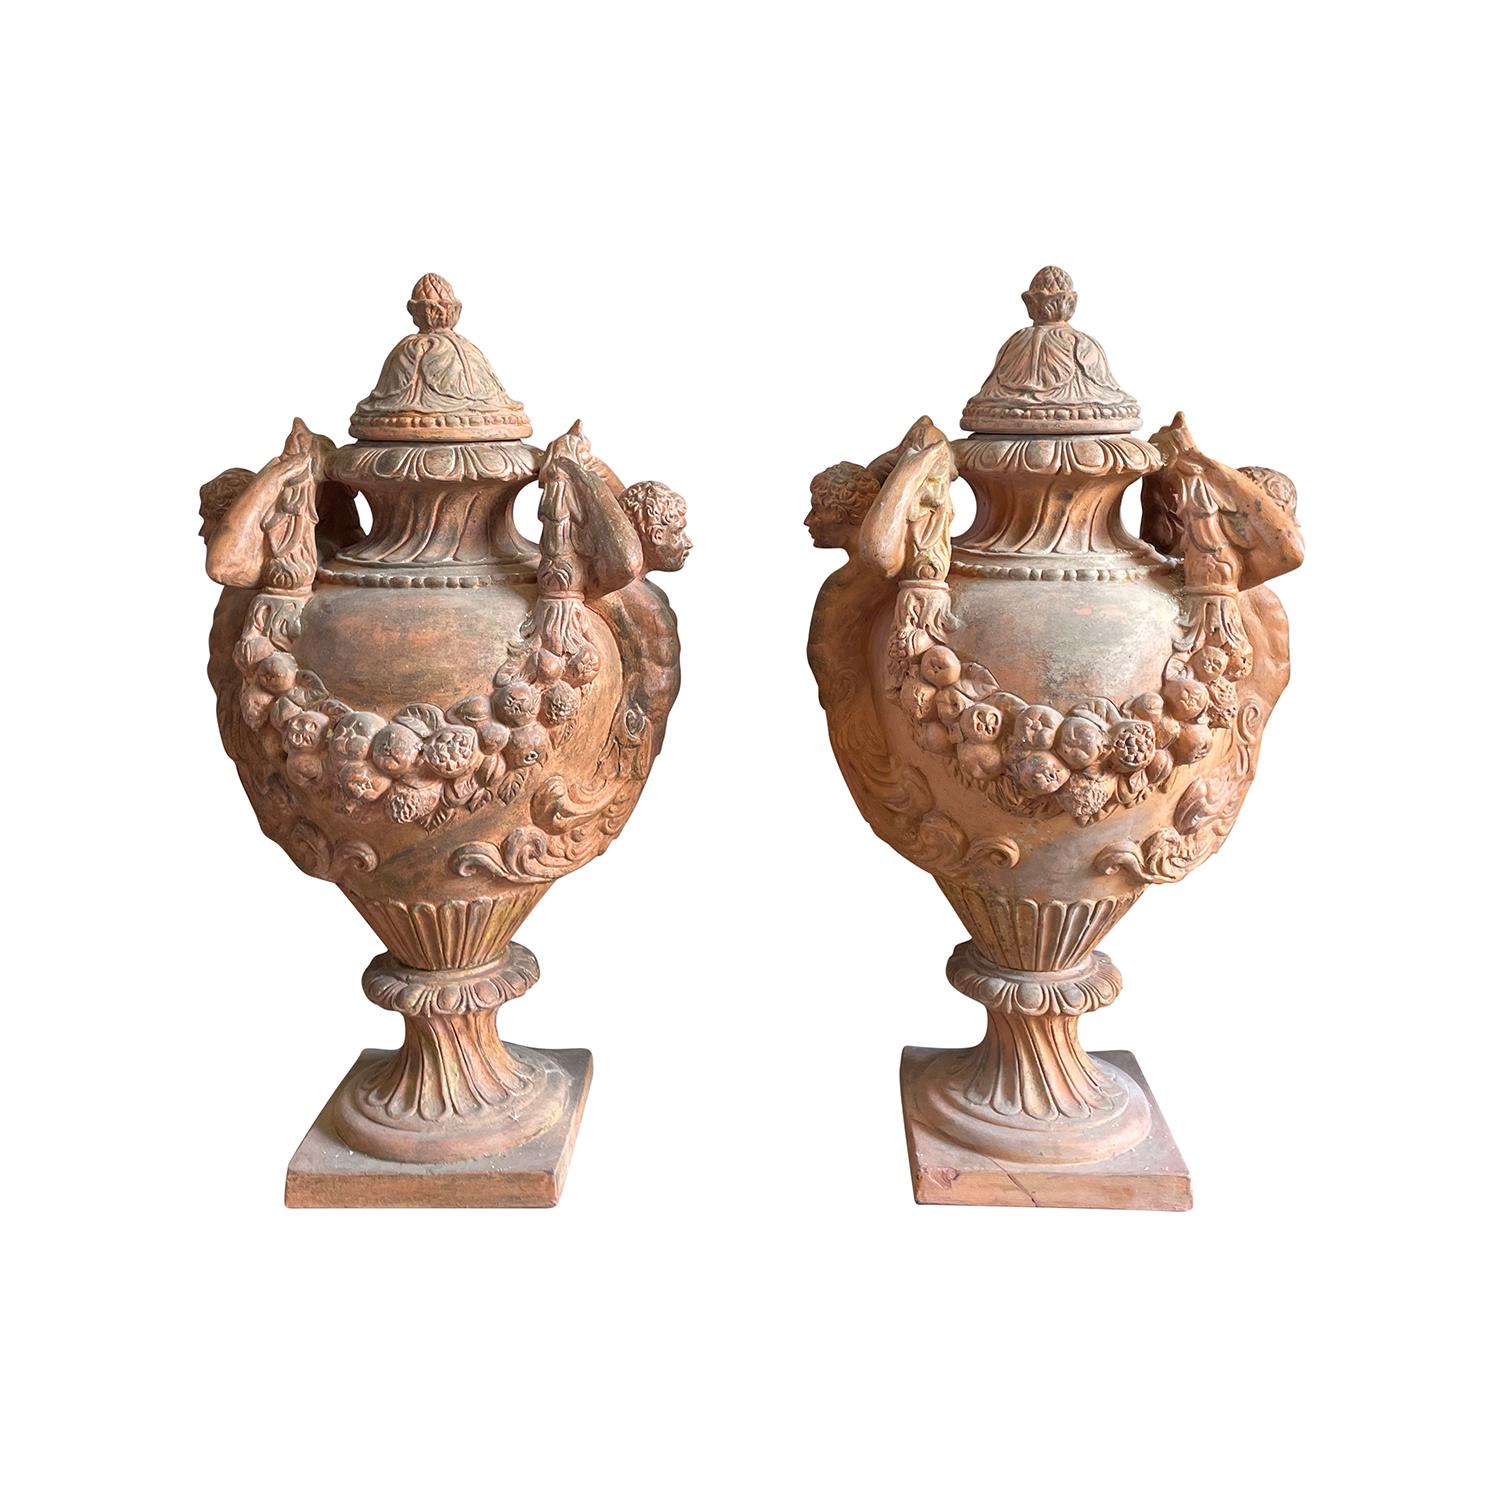 Paire de vases anciens en terre cuite de style Renaissance, très ornés, décorés de Caryatides et de guirlandes, en bon état. Le corsage des urnes est posé sur une base carrée. Les épis de faîtage sont surmontés d'un couvercle et d'un épi de faîtage